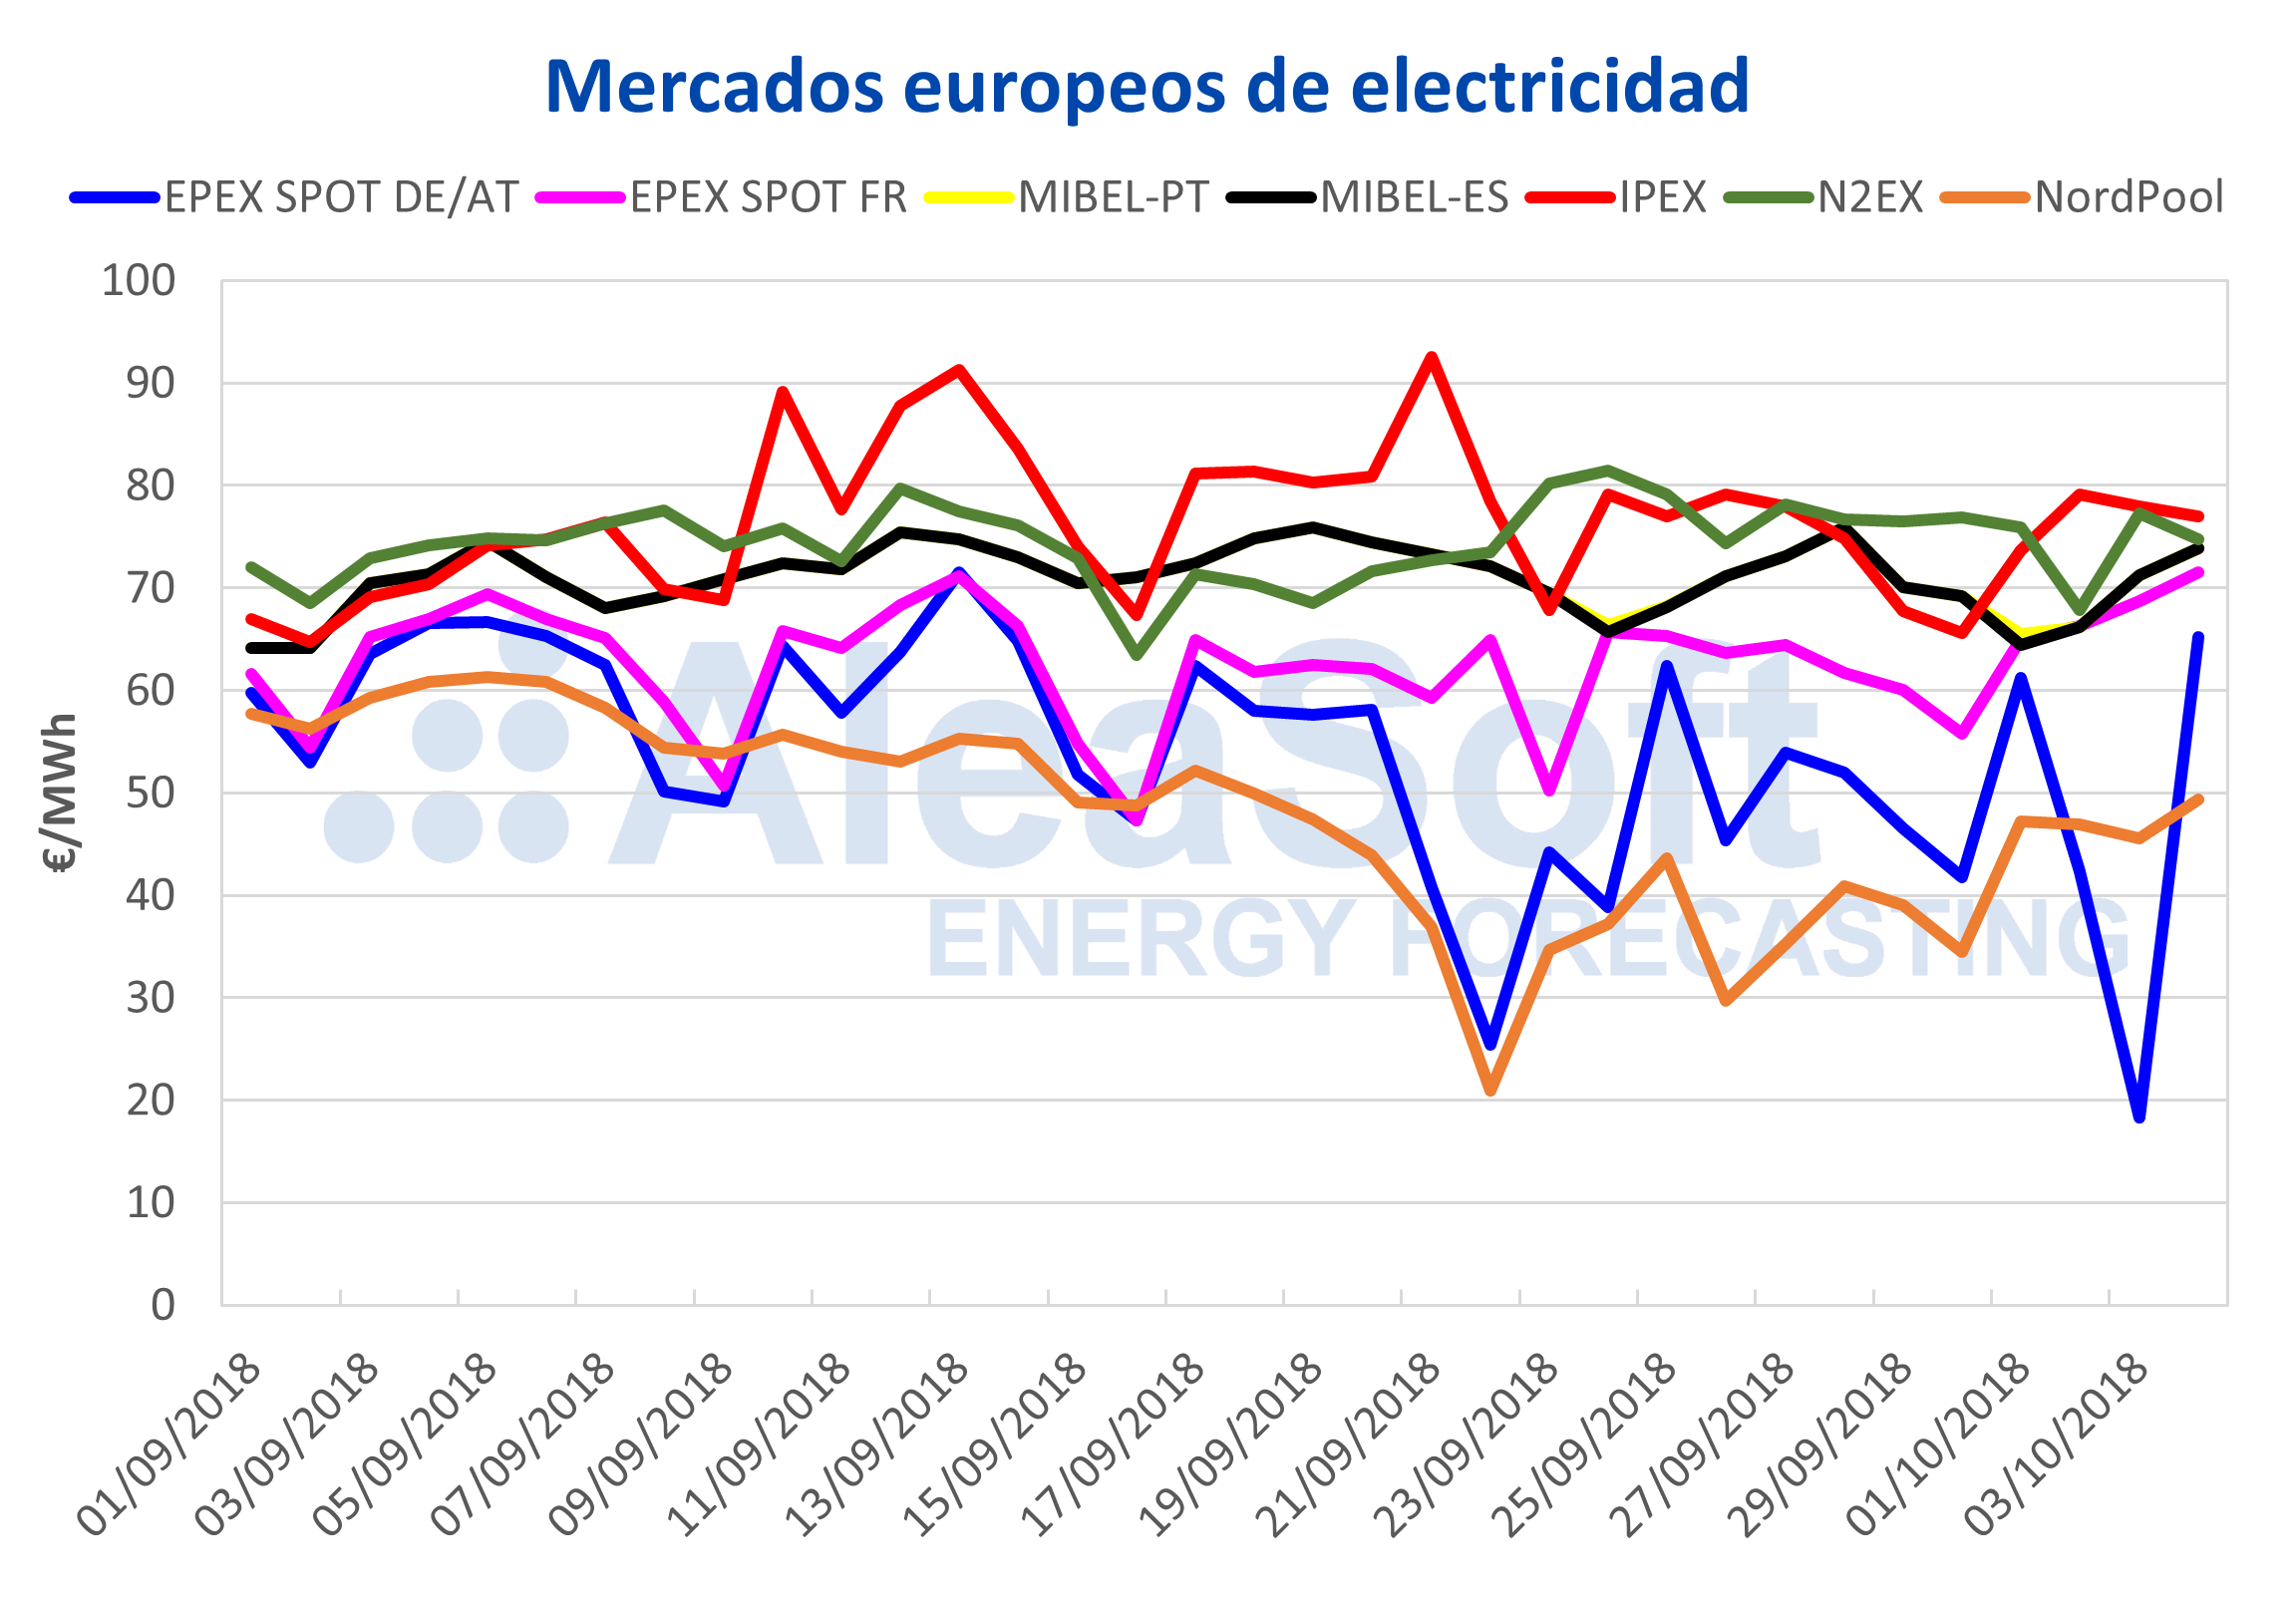 AleaSoft - Mercados europeos de electricidad